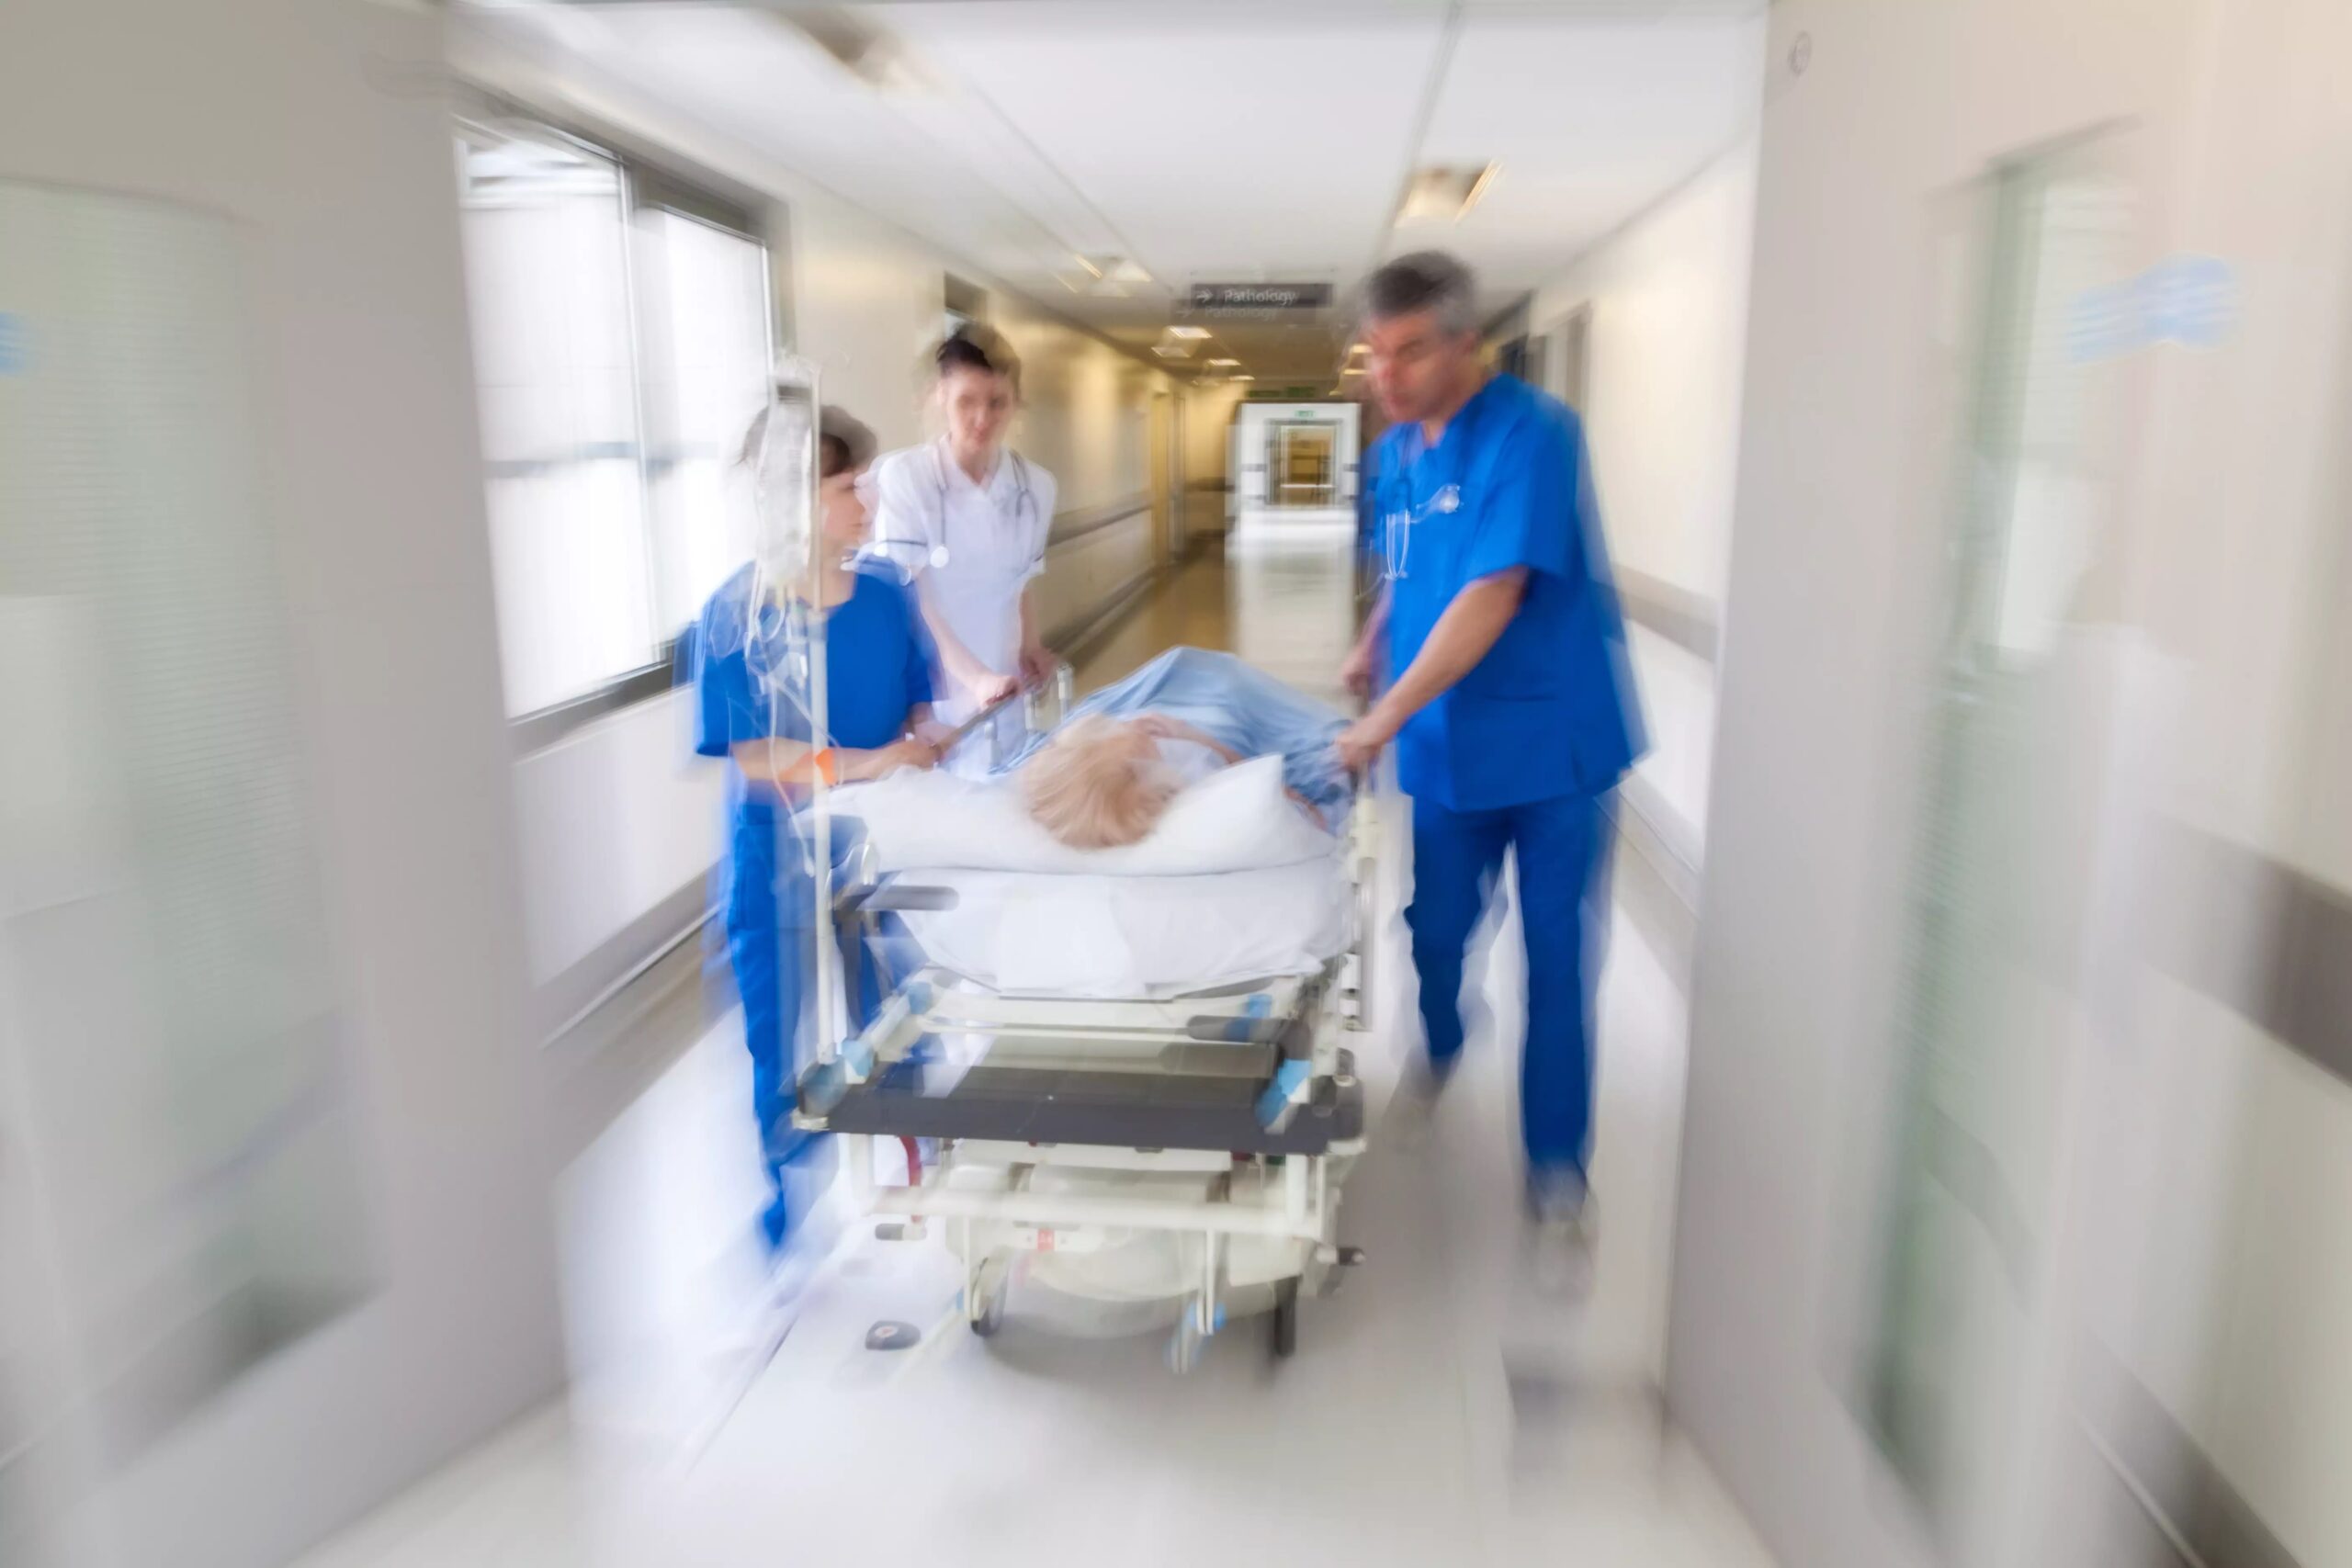 Times de Resposta Rápida são eficazes para reduzir parada cardiorrespiratória e mortalidade no ambiente hospitalar